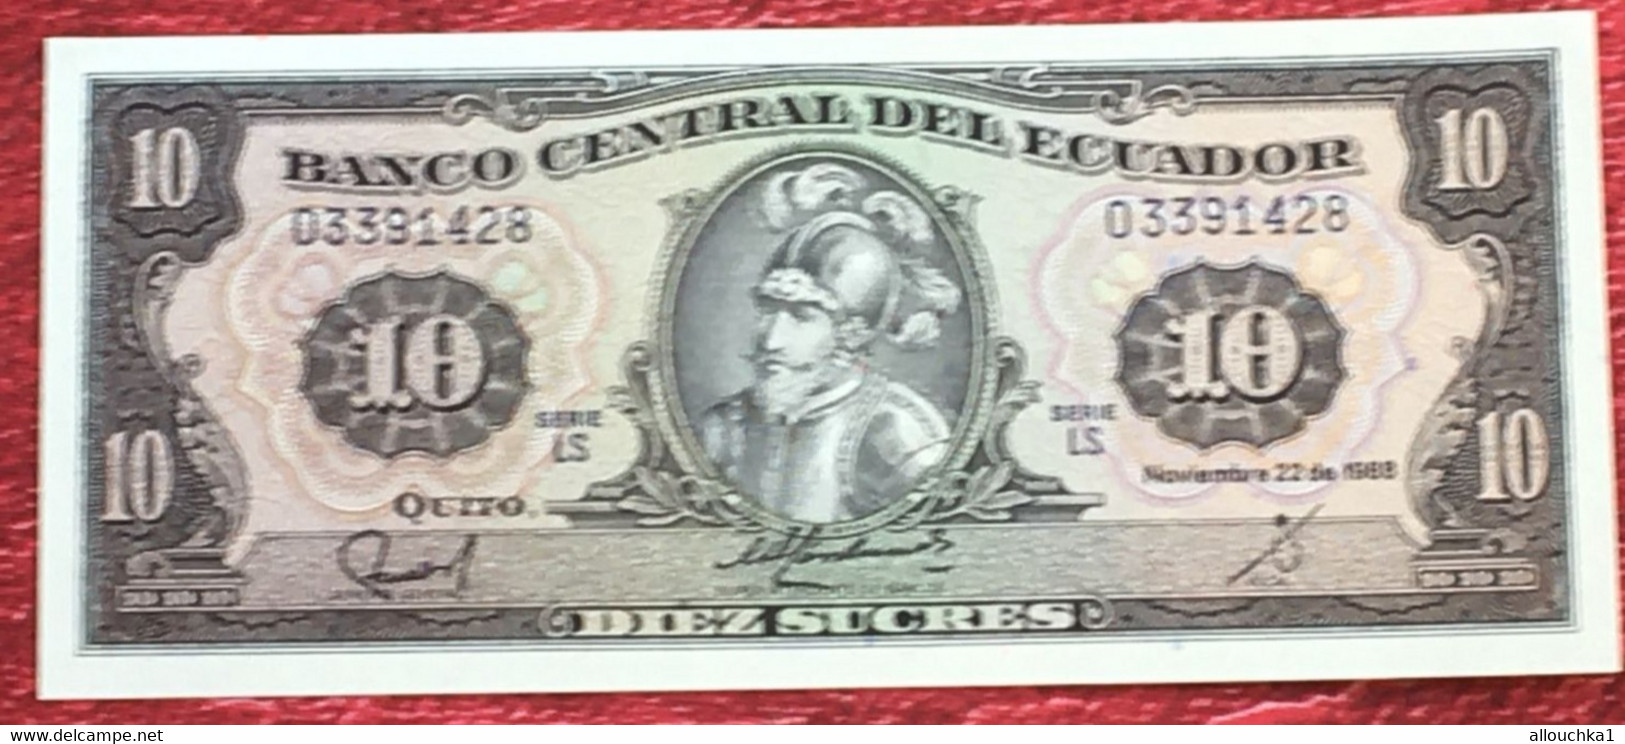 Billet Bank Équateur Ecuador -☛EQUATEUR Billet Neuf De 10 SUCRES Pick121 SEBASTIAN DE BENALCAZAR 1988 ECUADOR - Ecuador